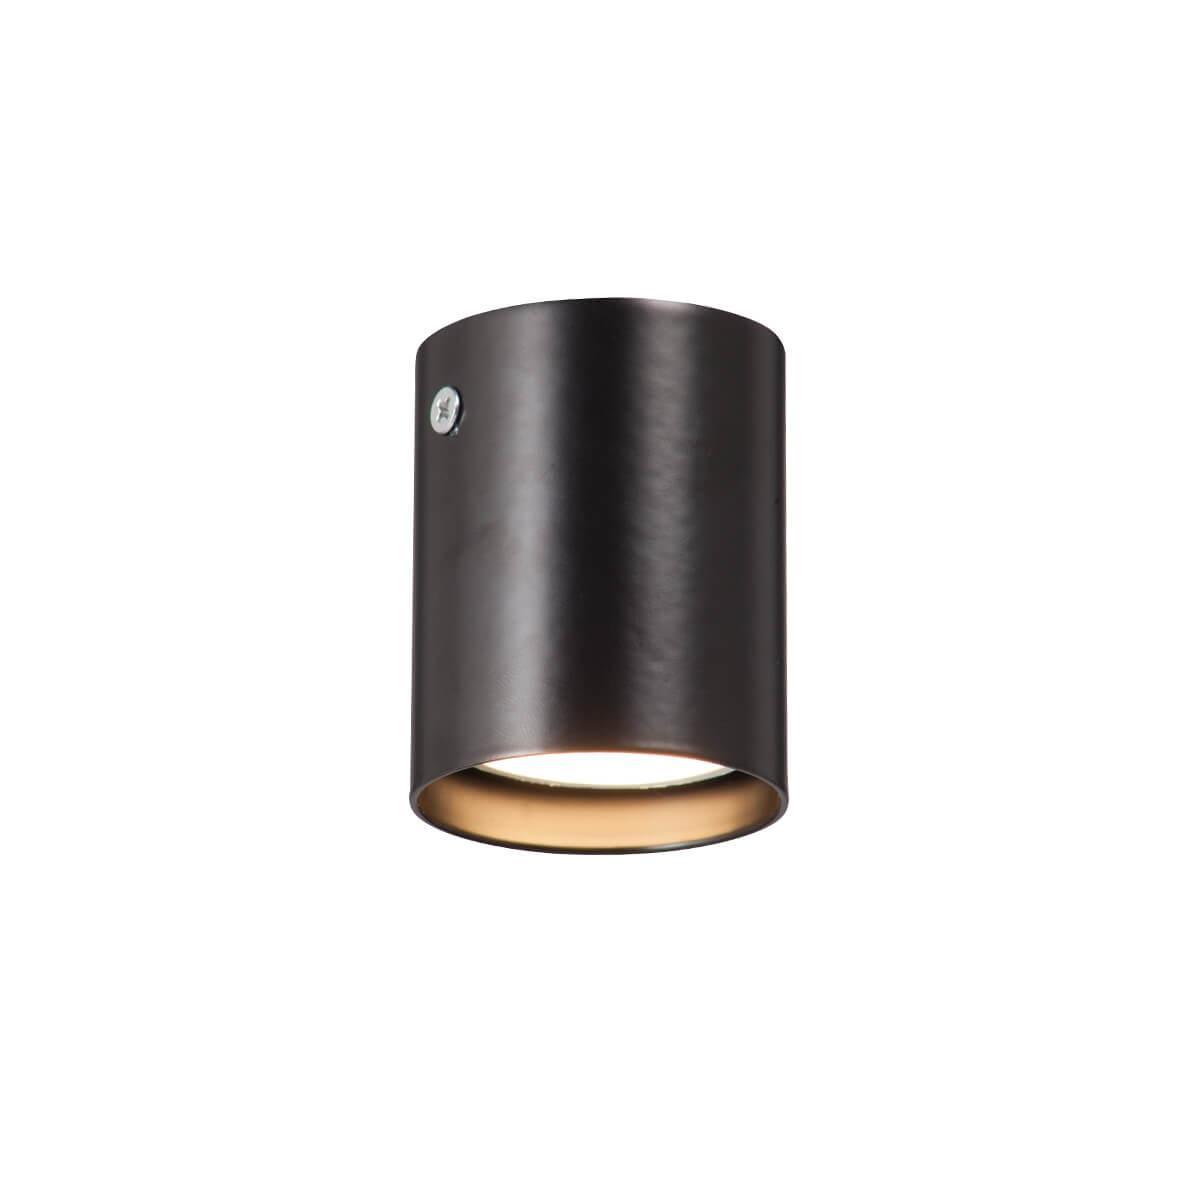 Накладной светильник Vitaluce V4639-1/1PL засов накладной с пружиной ригель круглый домарт 600 мм античная медь